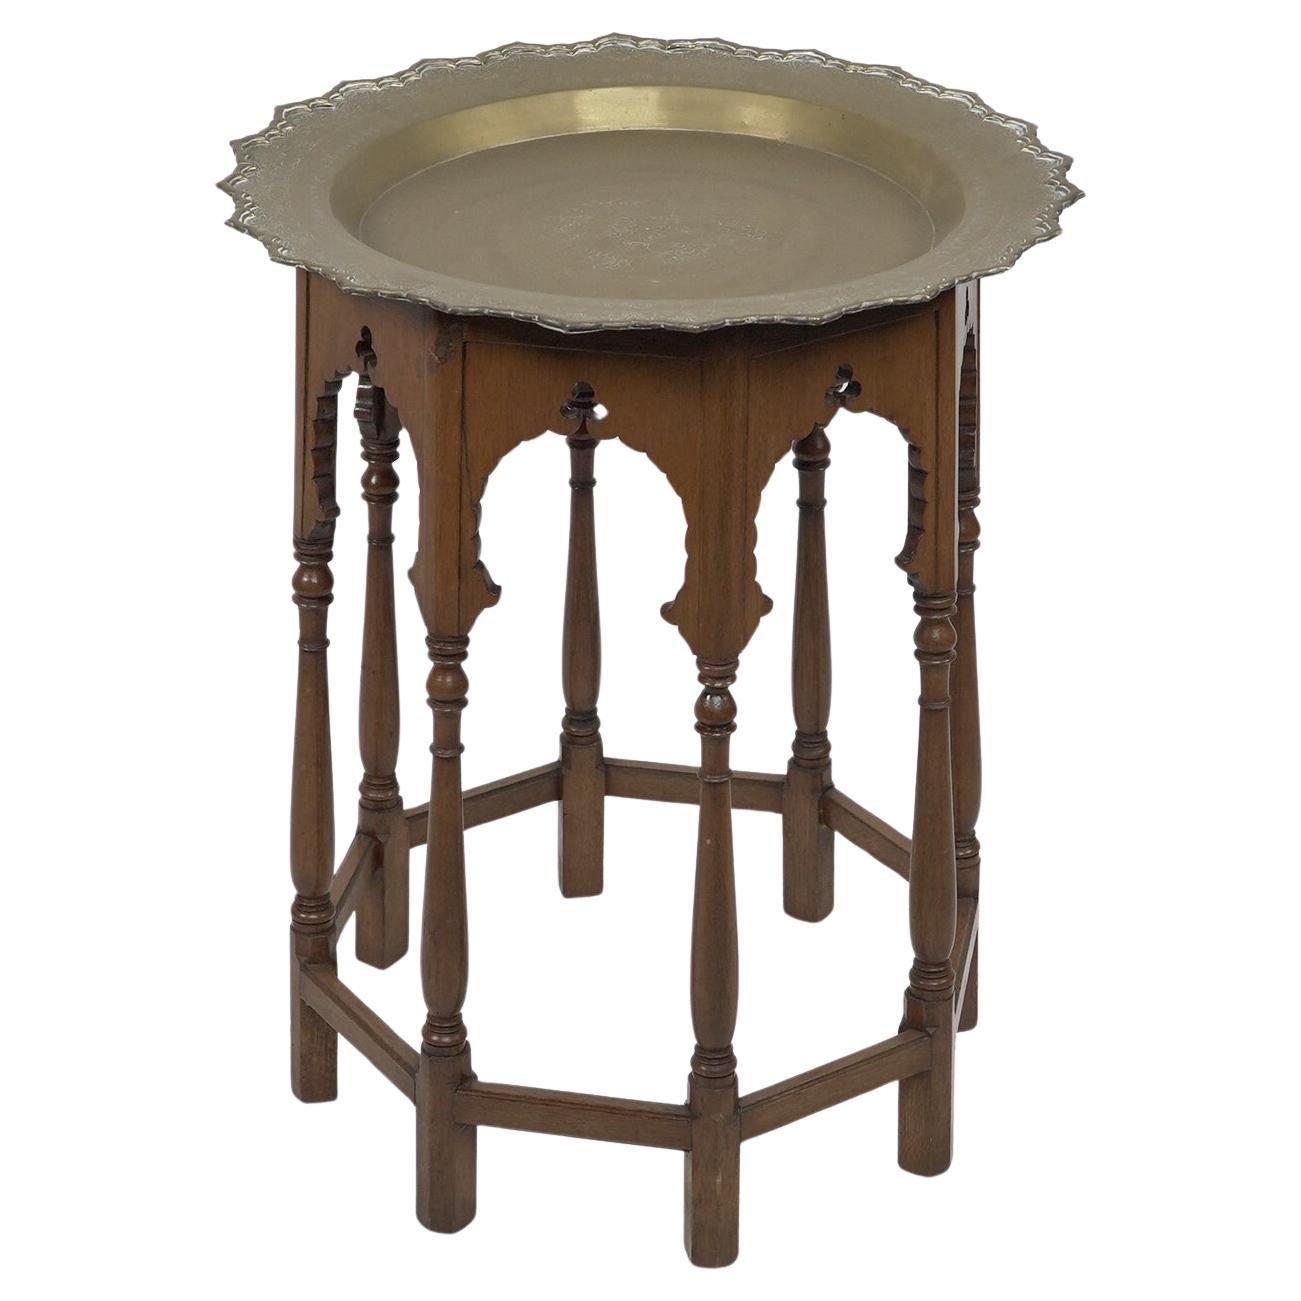 Ein Beistelltisch im maurischen Stil mit einer schweren, abnehmbaren schalenförmigen Tischplatte aus Messing